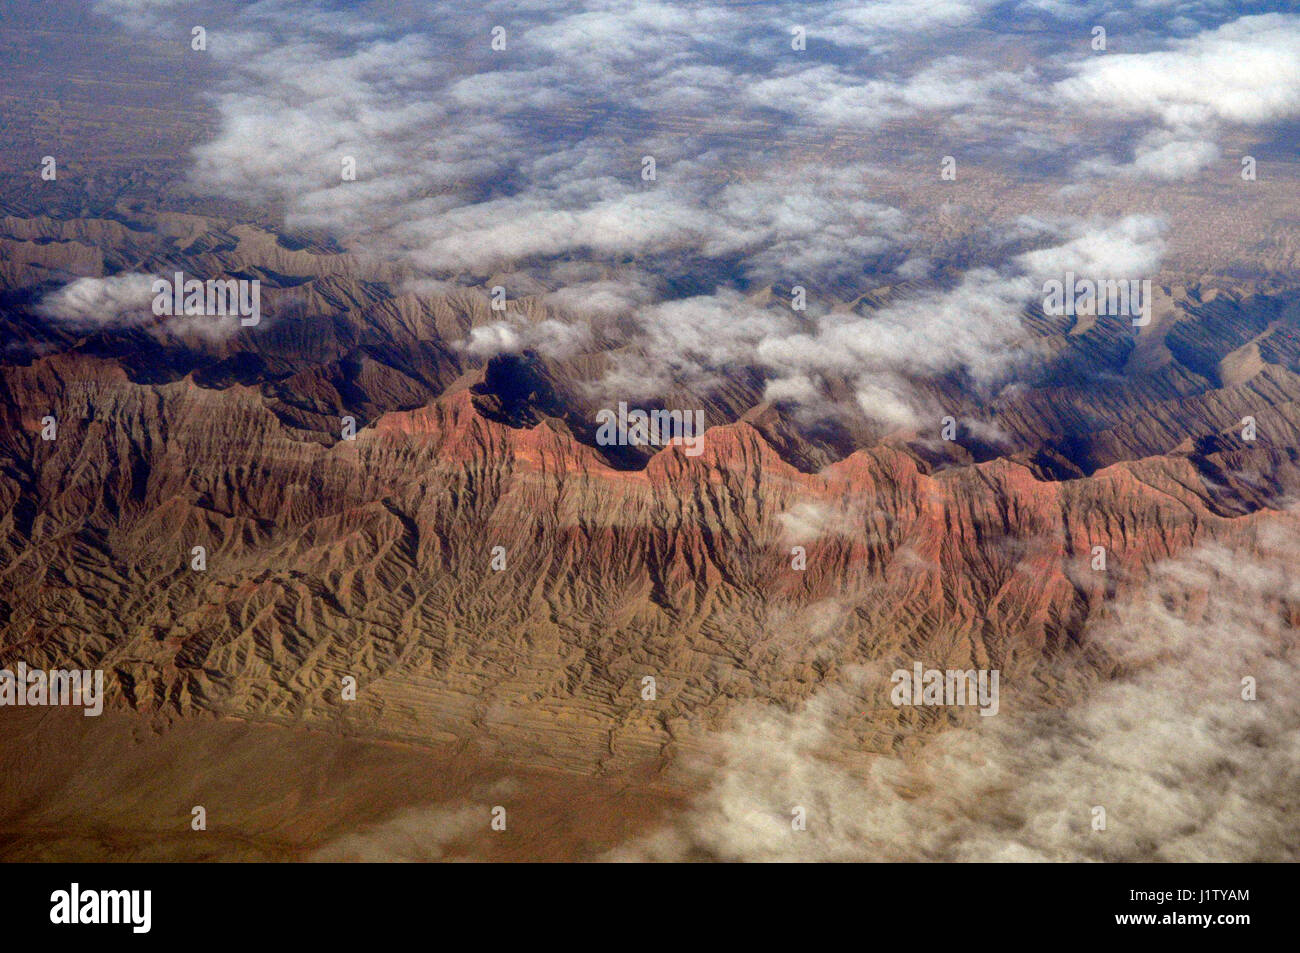 Dramatic aerial views of the Tian Shan mountain range in Xinjiang, China. Stock Photo